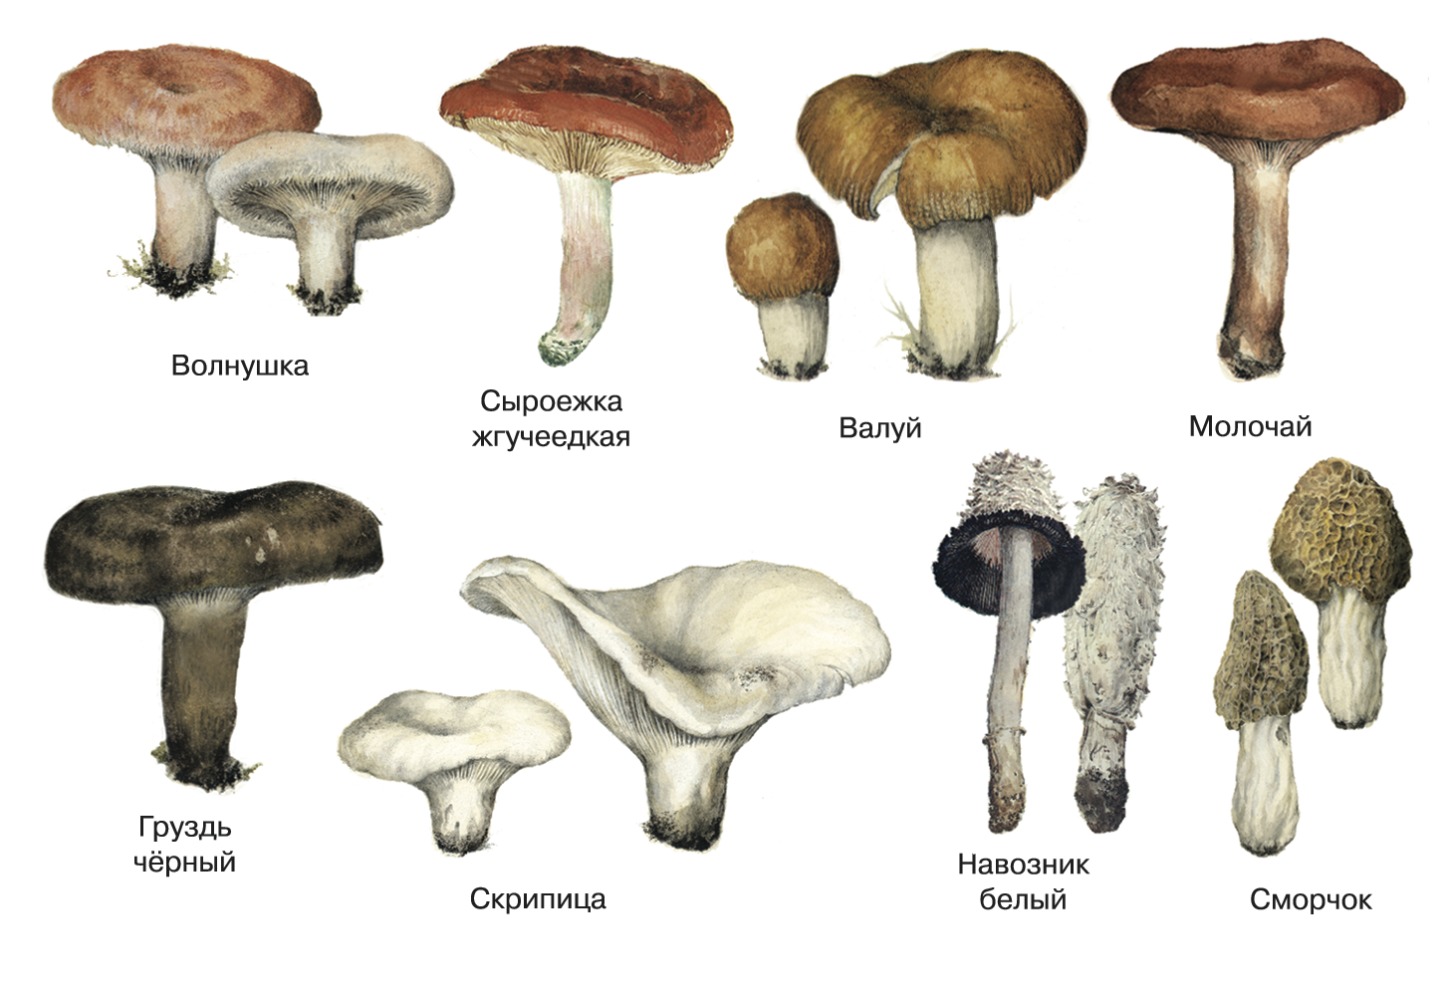 Съедобные грибы Подмосковья: фото, название и описание